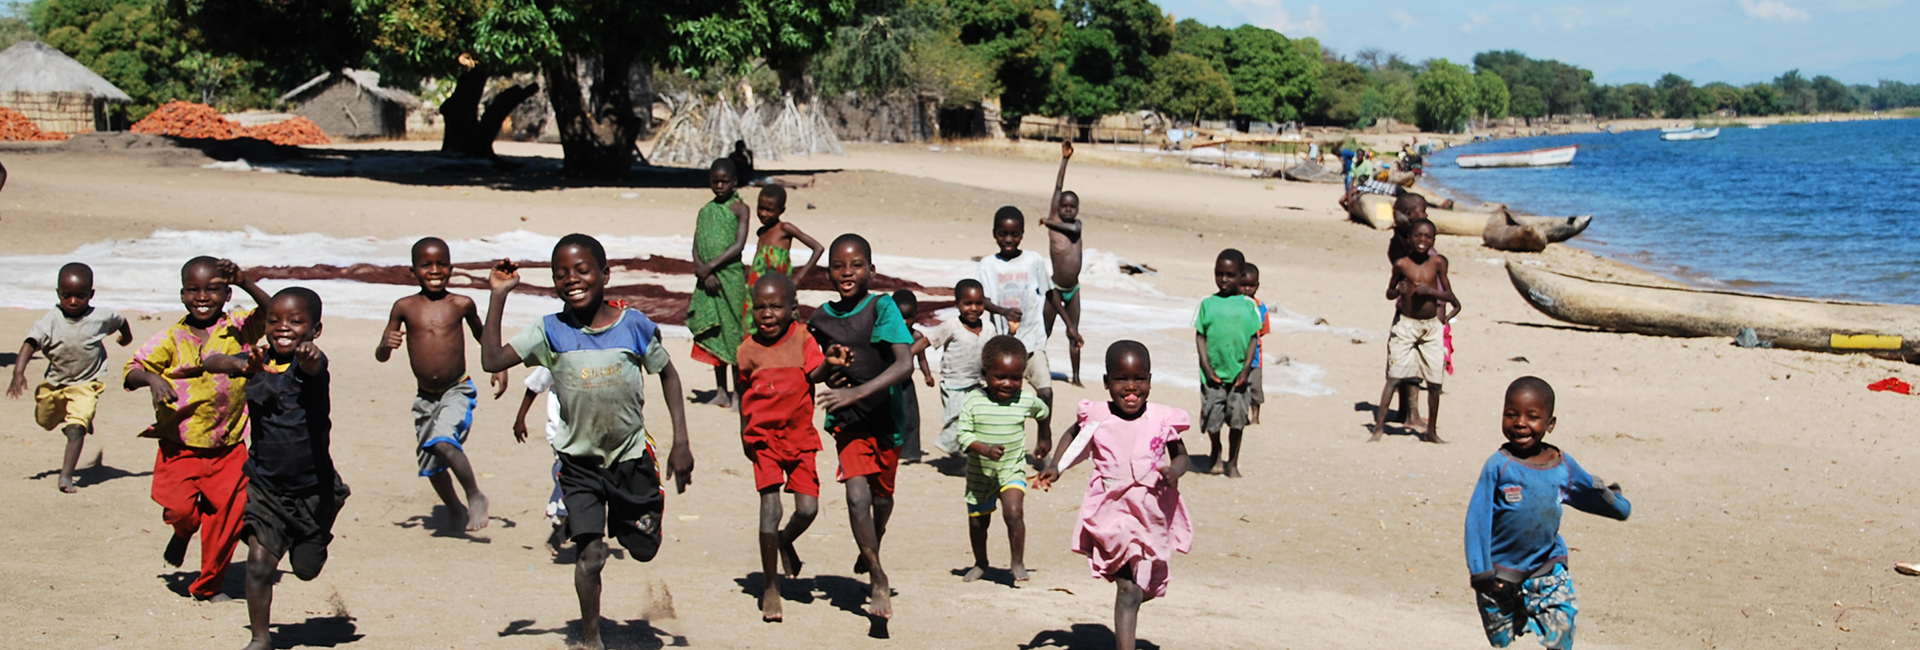 Malawi reizen